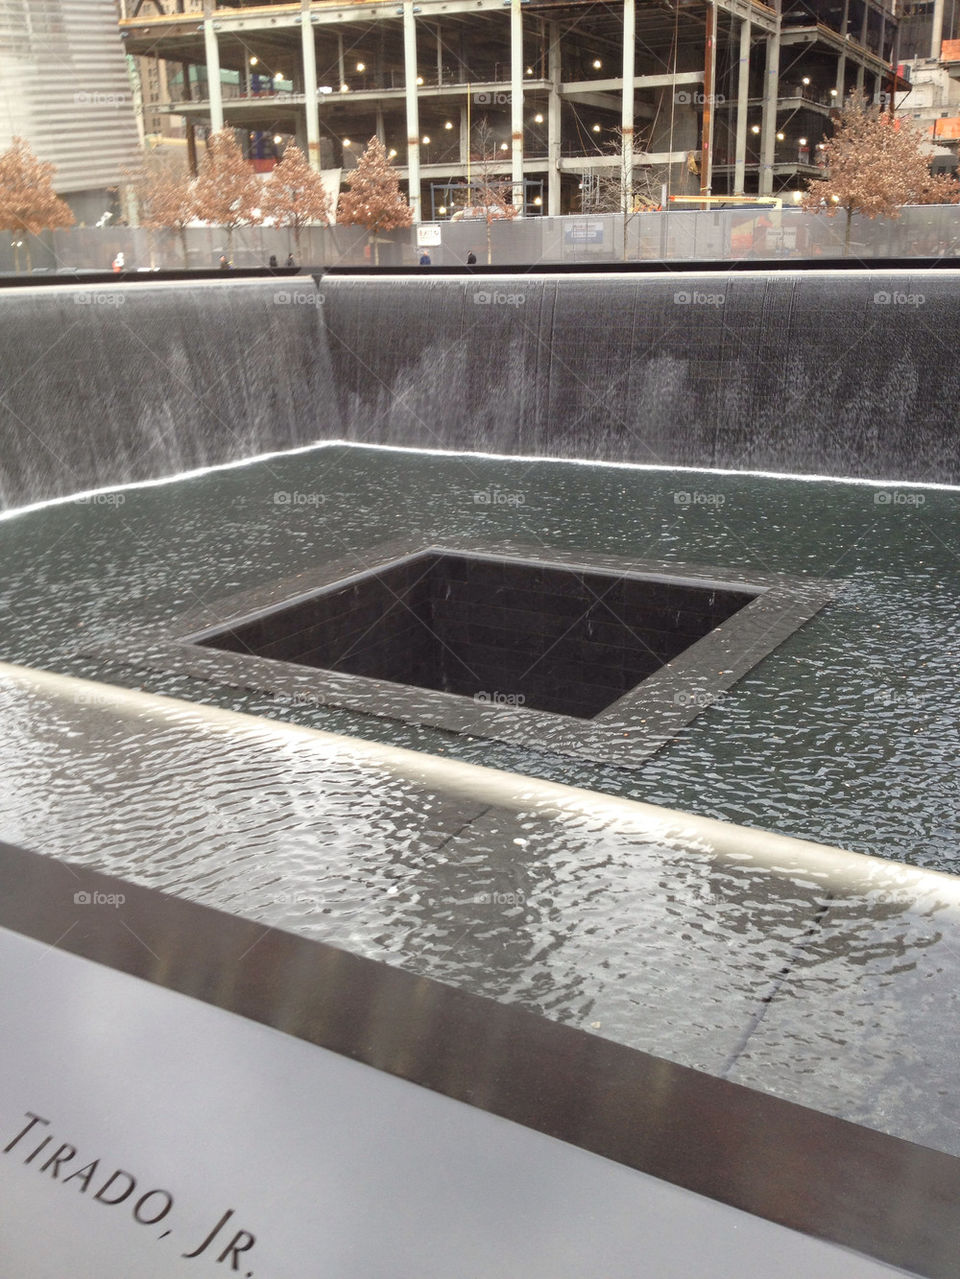 9-11 memorial in NY.